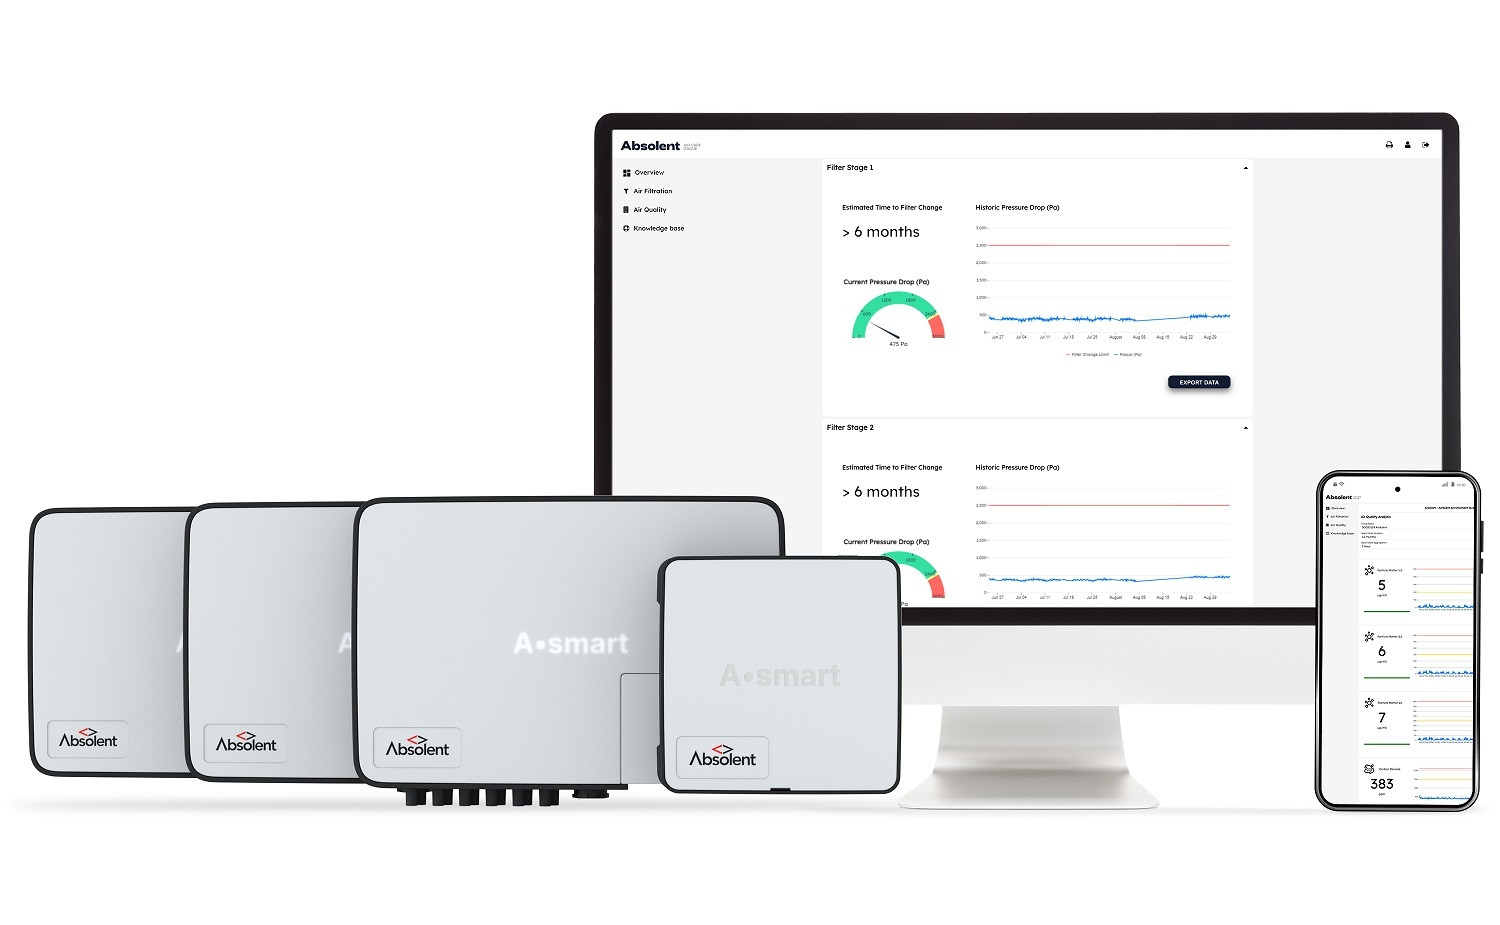 Die Absolent GmbH stellt ihre neuste Produktinnovation, Asmart Ambient, als Teil ihrer Asmart IoT-Lösung den Besuchern der AMB vor.